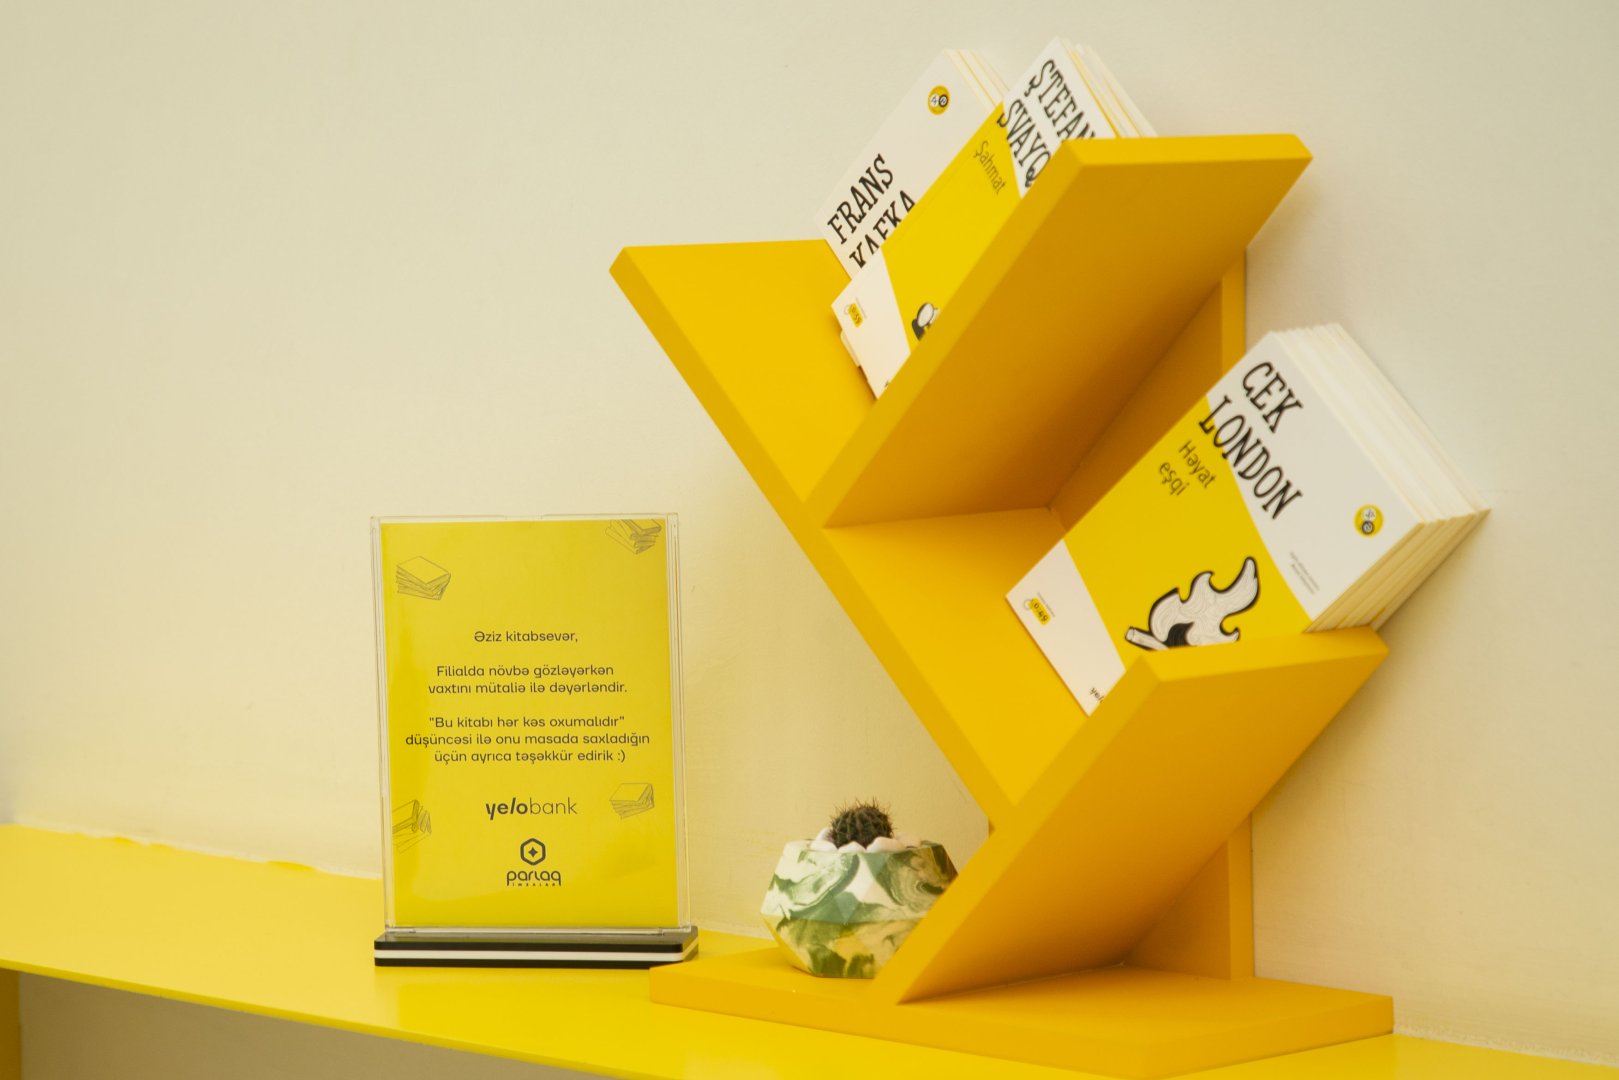 Yelo Bank запустил новый проект с издательством «Парлаг Имзалар» (ФОТО)